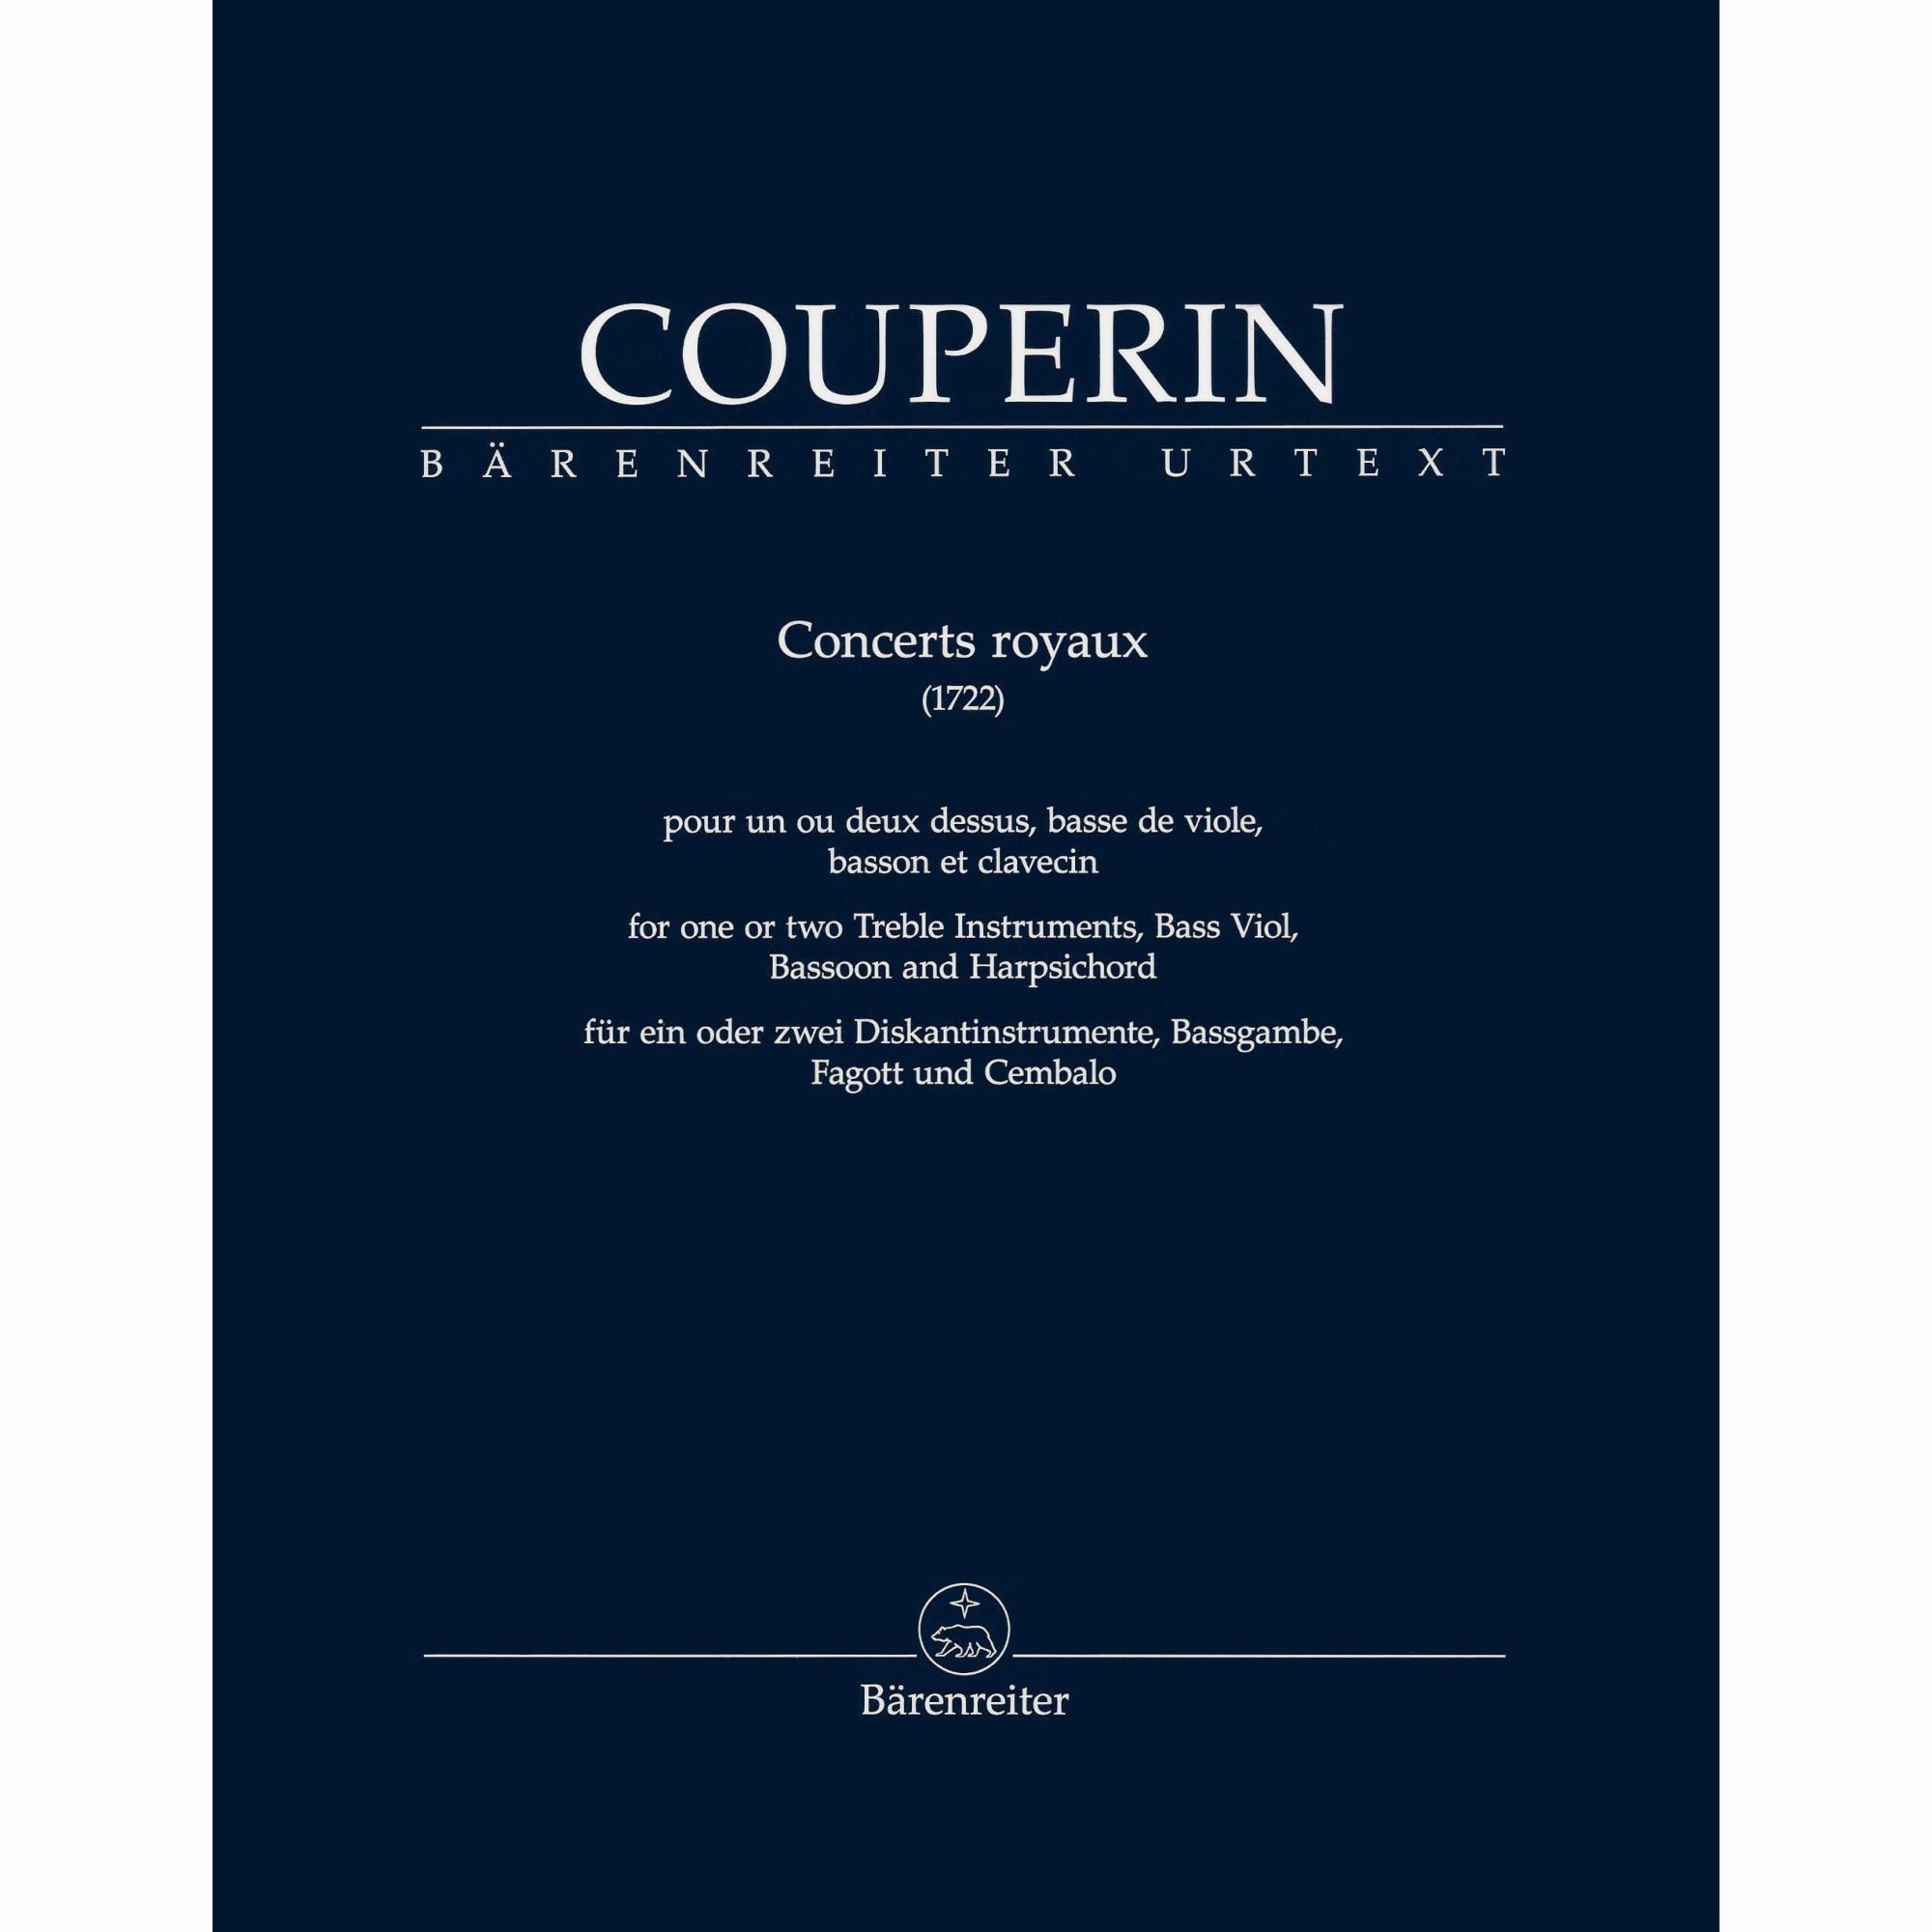 Couperin -- Concerts royaux (1722)